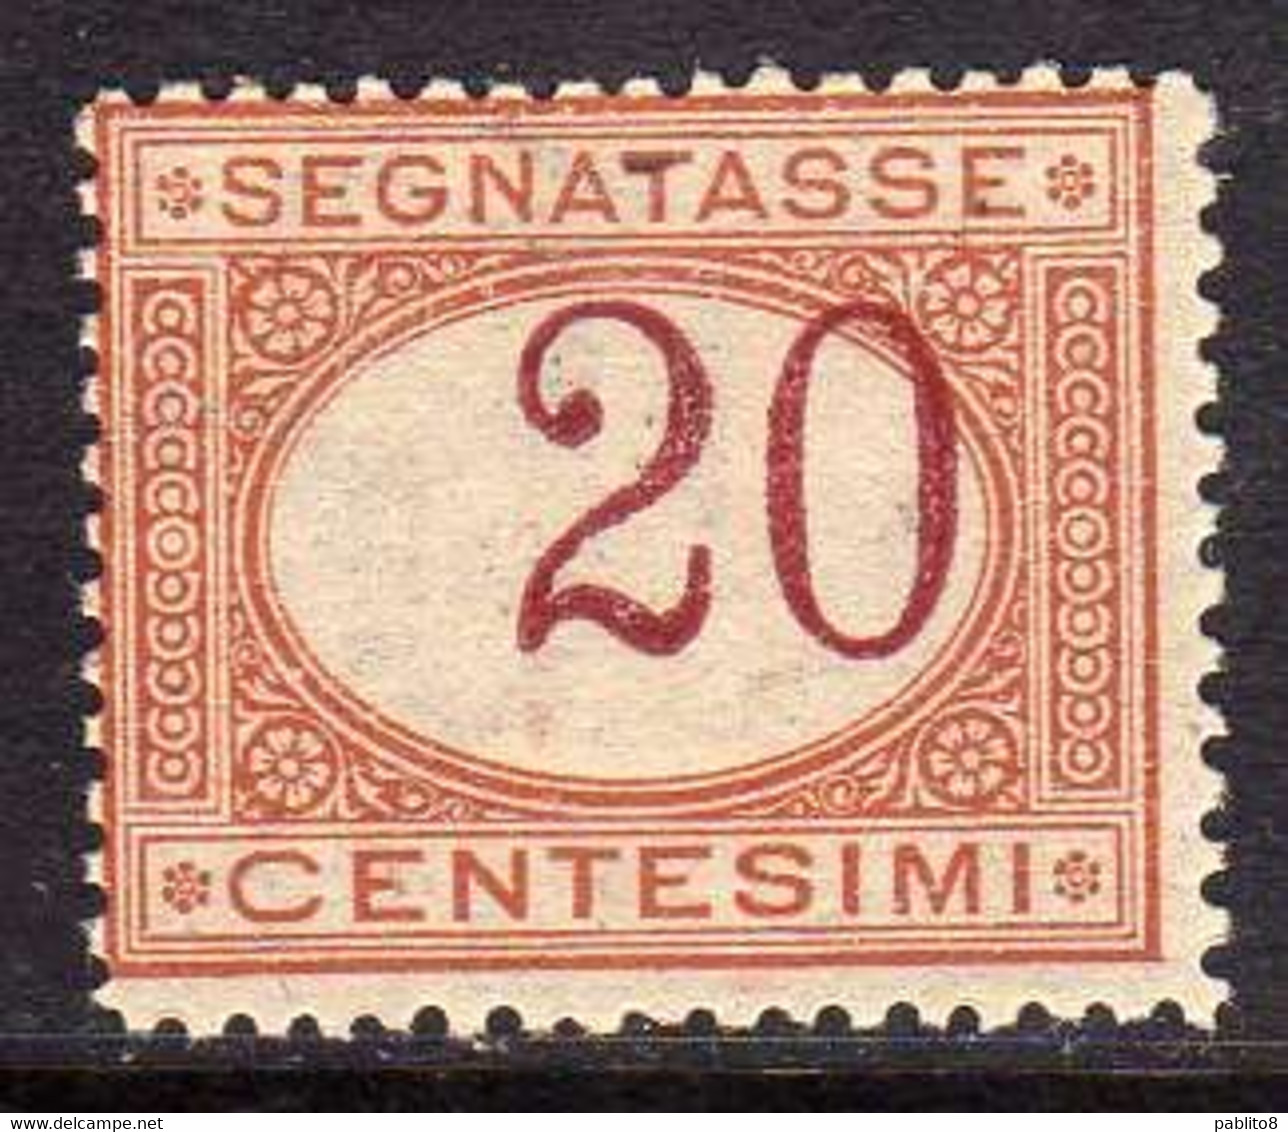 ITALIA REGNO ITALY KINGDOM 1890 SEGNATASSE CENT. 20 MNH CON CIFRA FORTEMENTE SPOSTATA A DESTRA - Postage Due